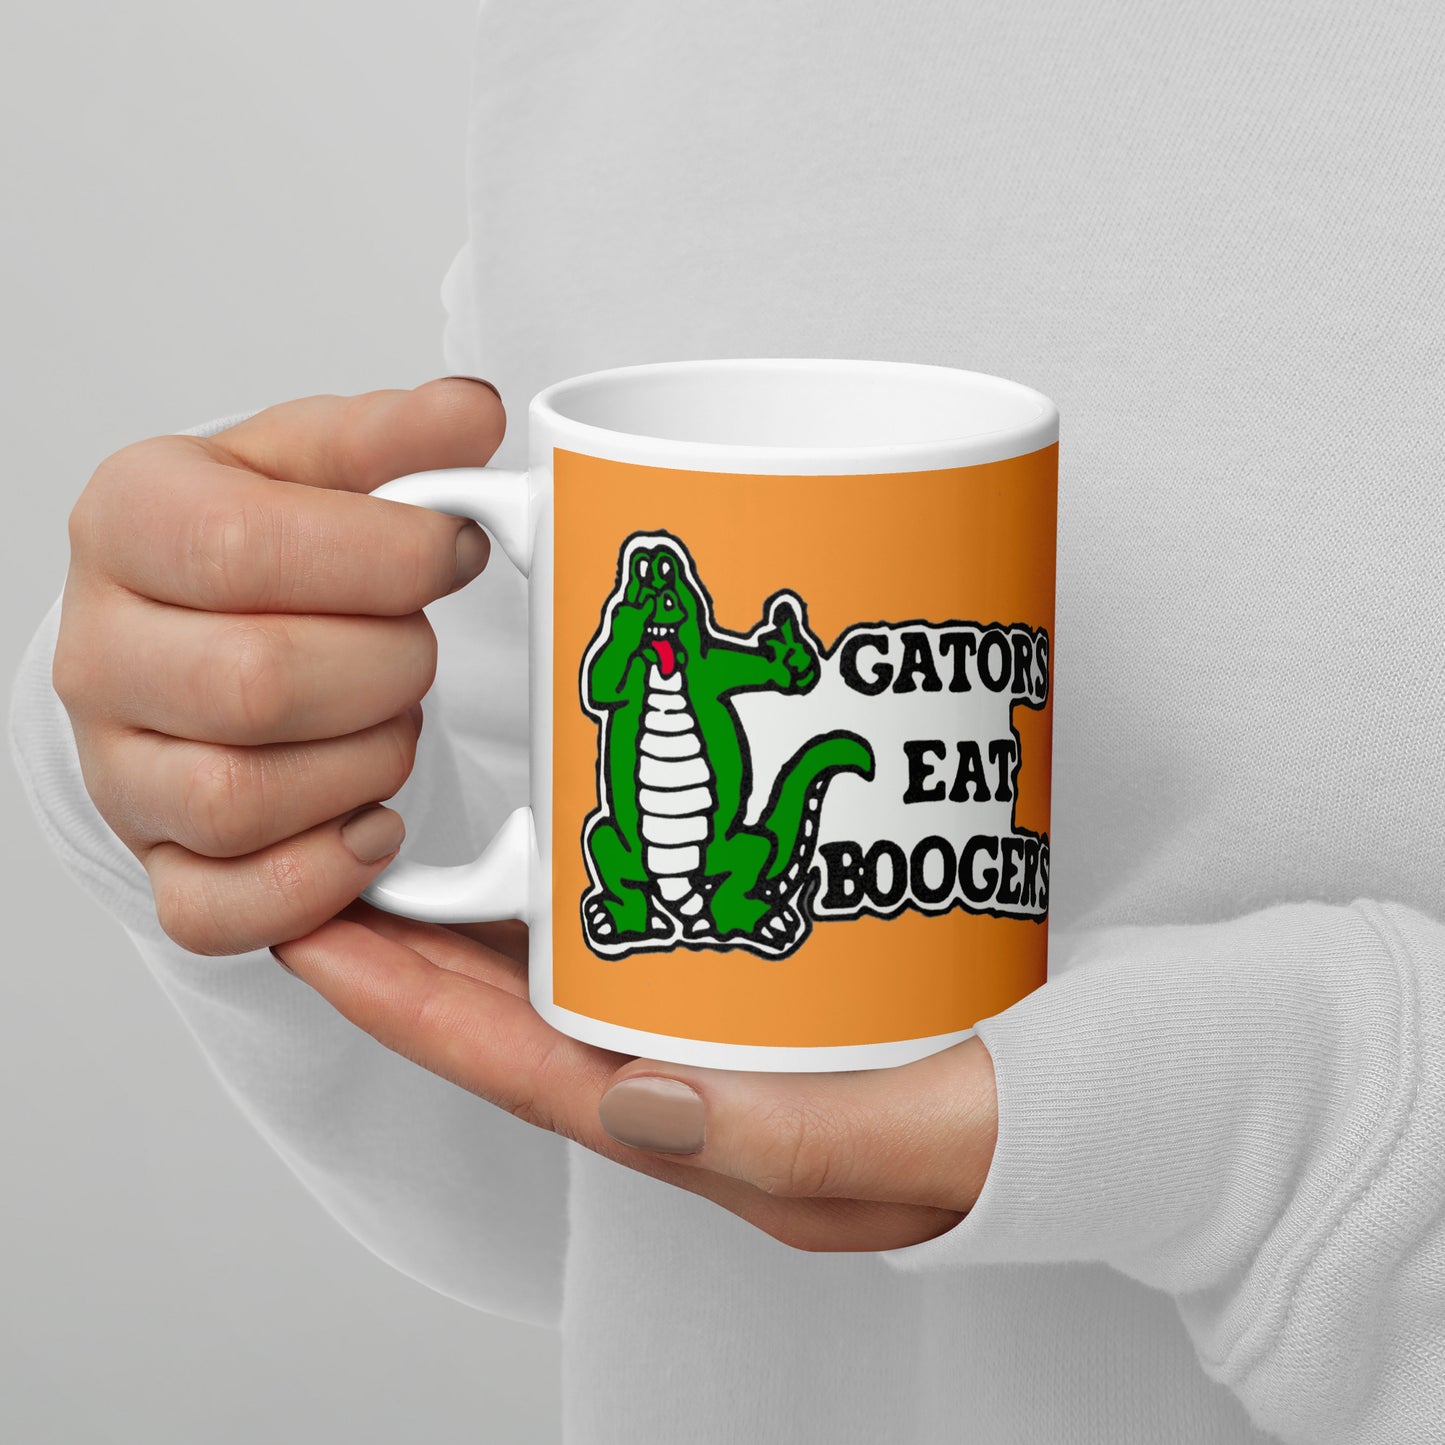 Gators Eat Boogers Classic Coffee Mug